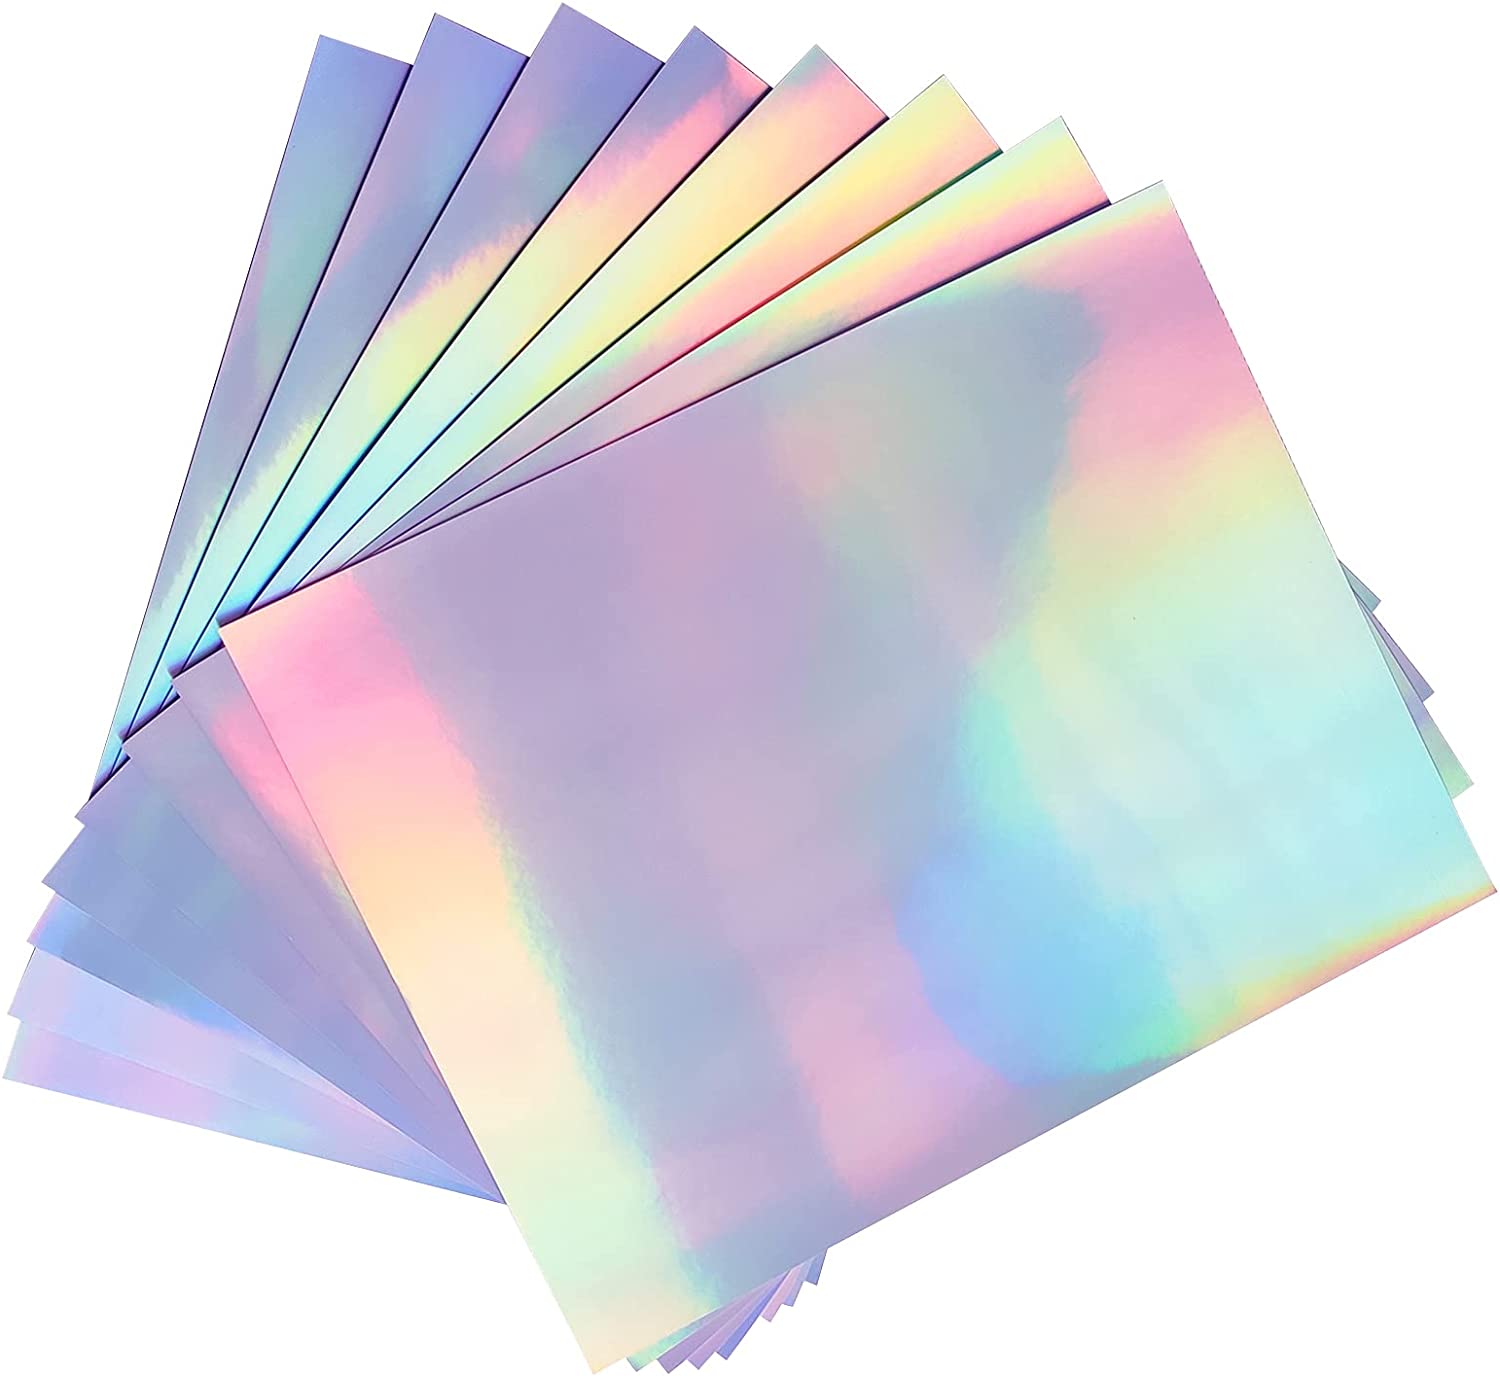 10pcs papier autocollant holographique imprimable pour votre